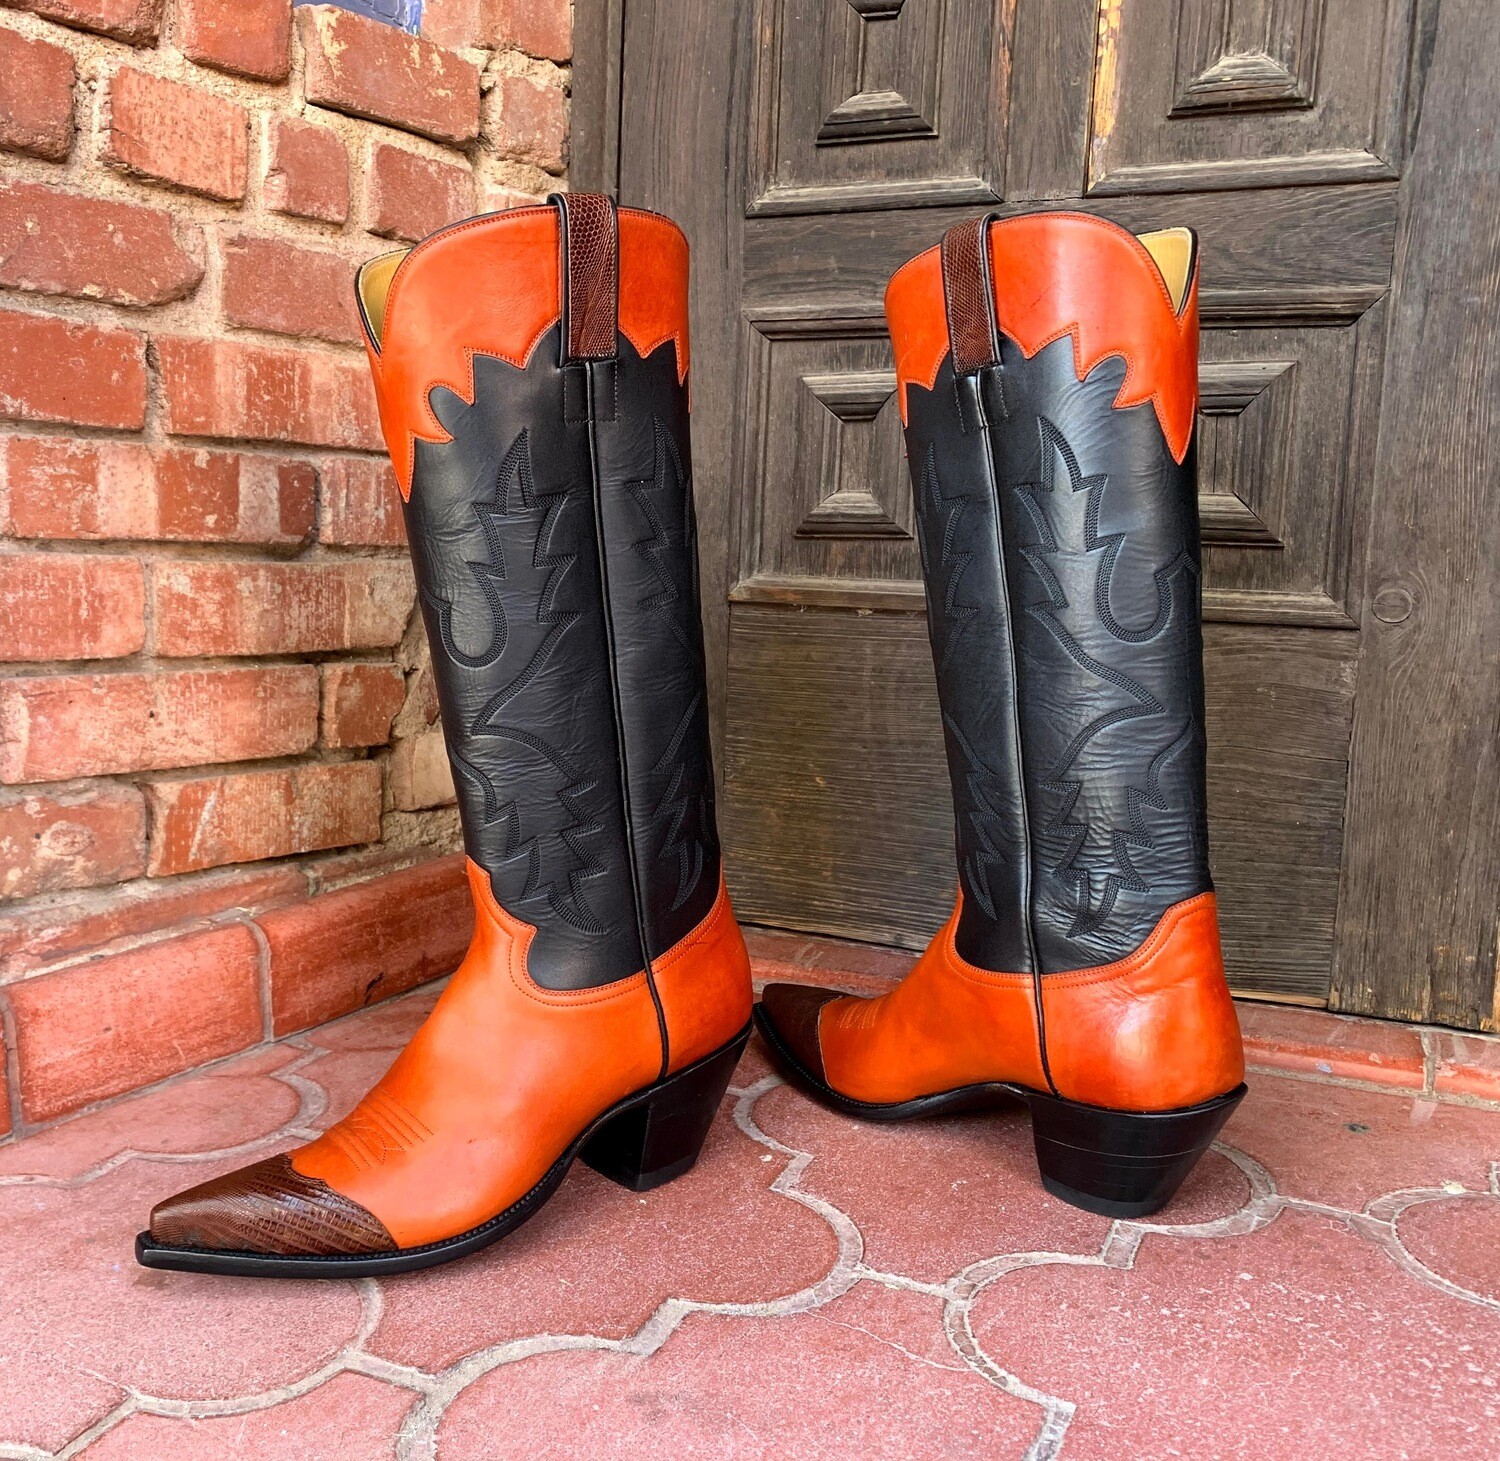 The Craig Cowboy Boots